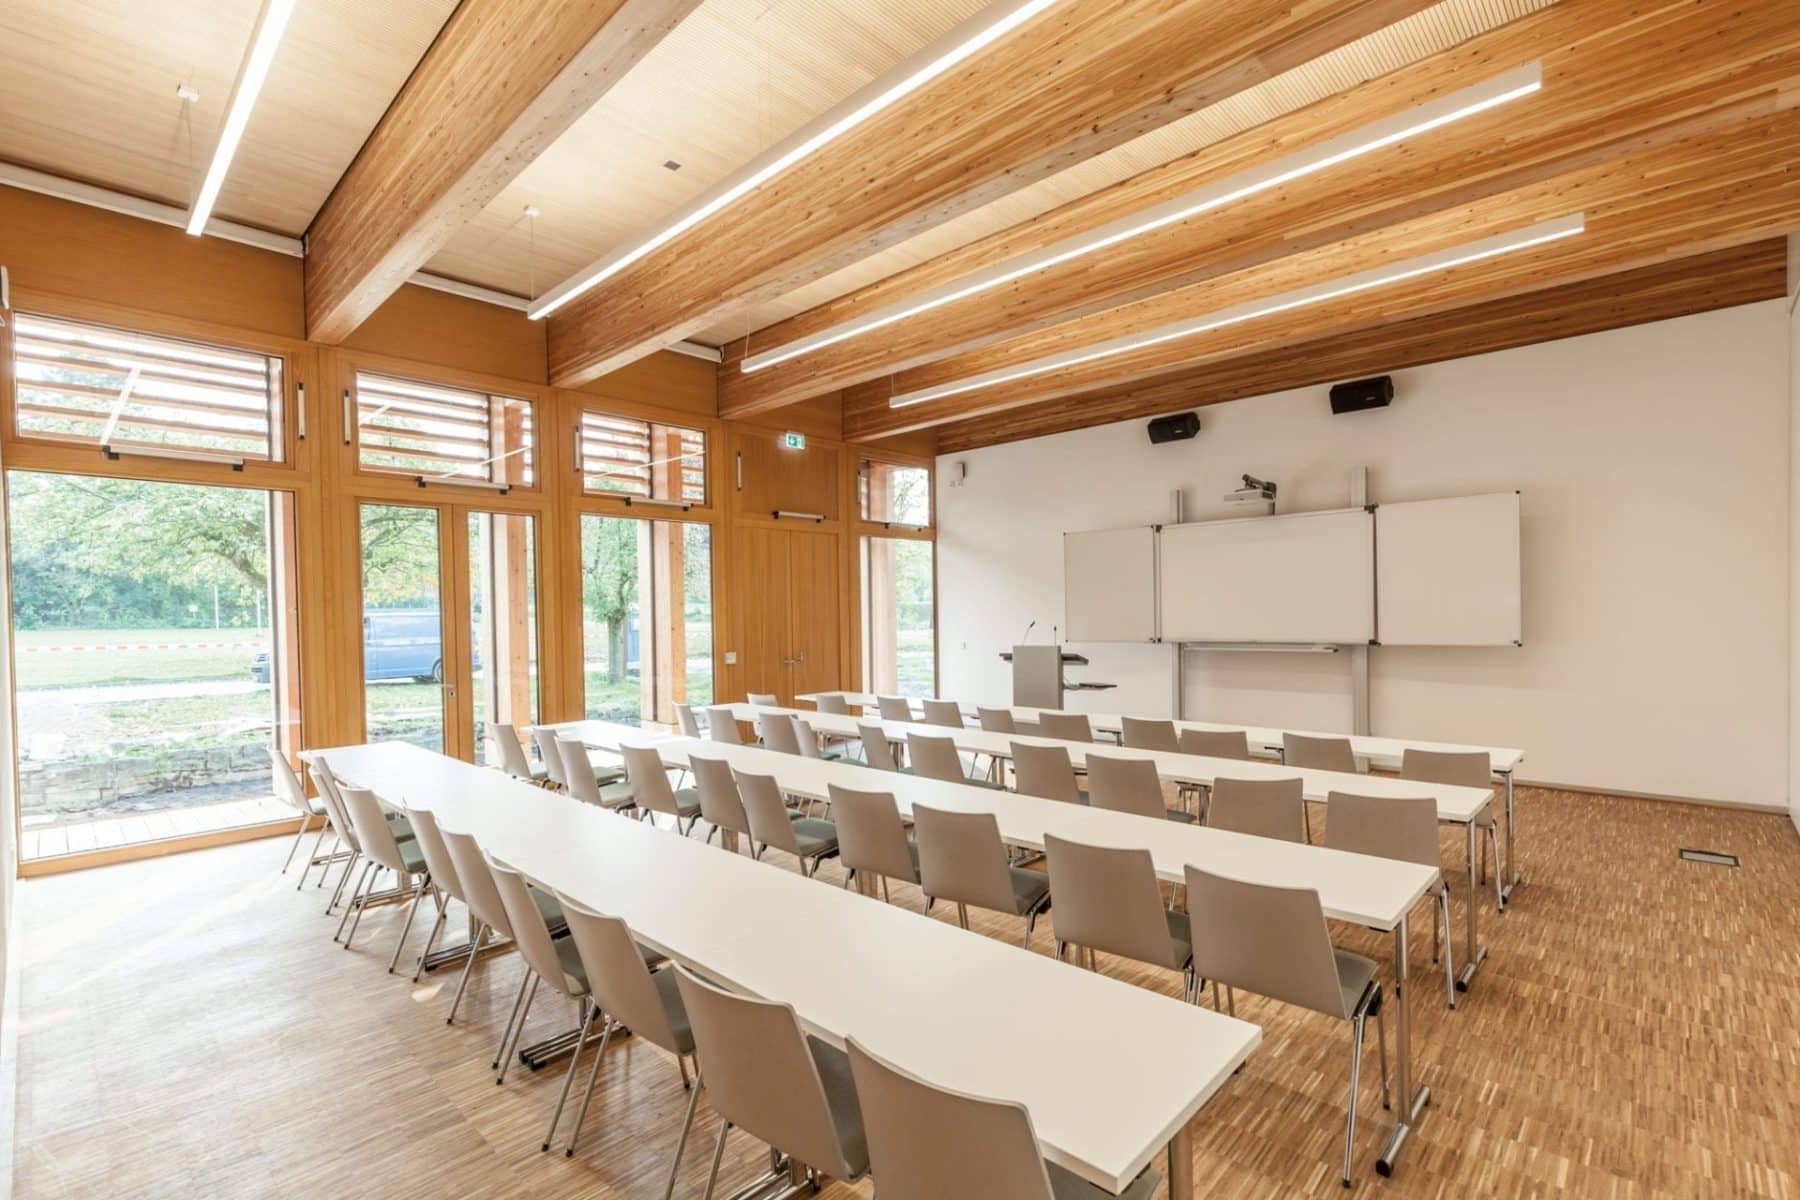 Hörsaalgebäude der Katholischen Hochschule Paderborn / Bildquelle: Bieling Architekten